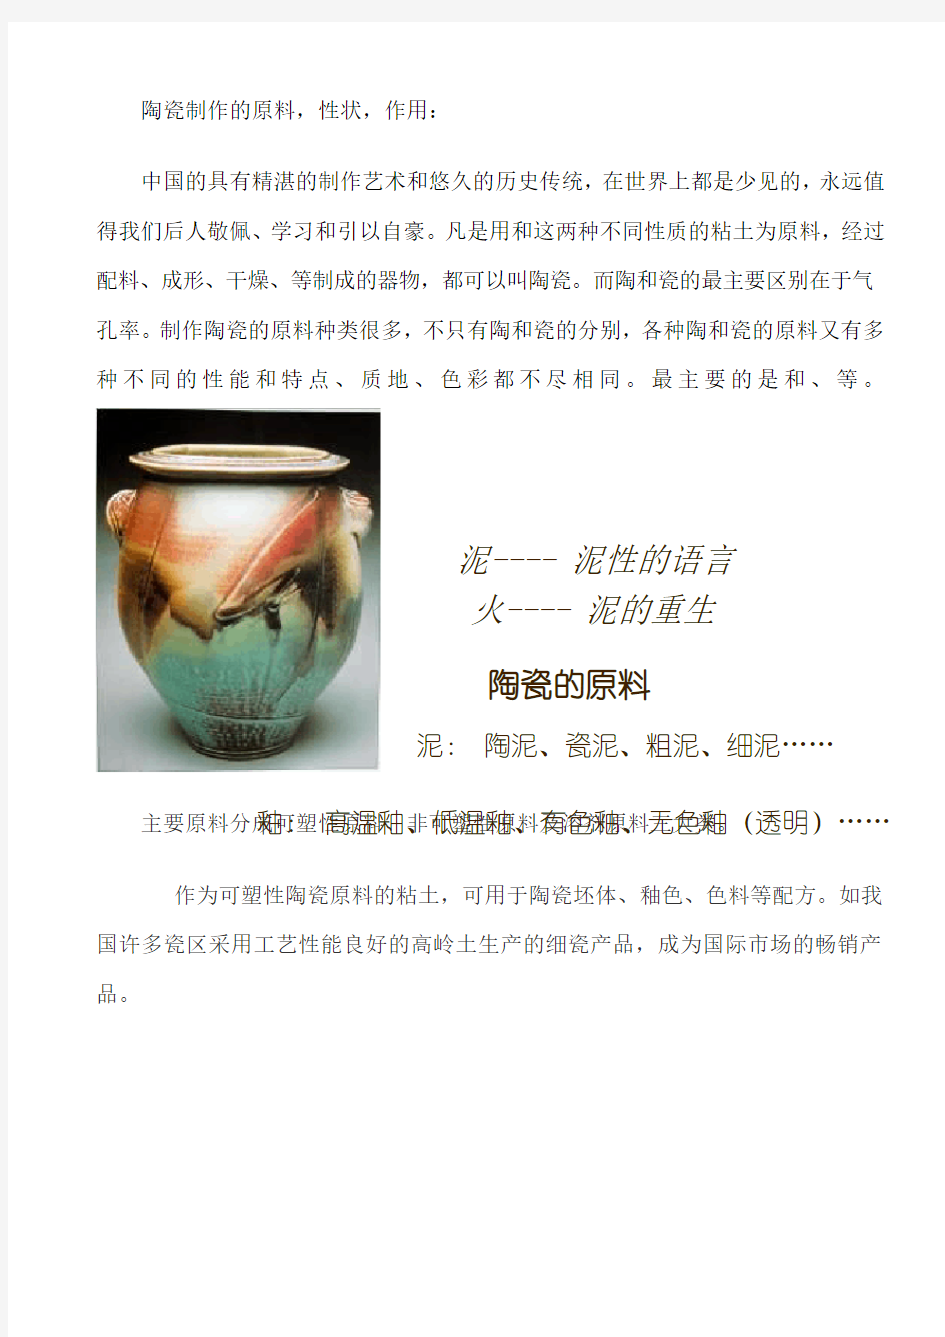 陶瓷制作的原料 (1)